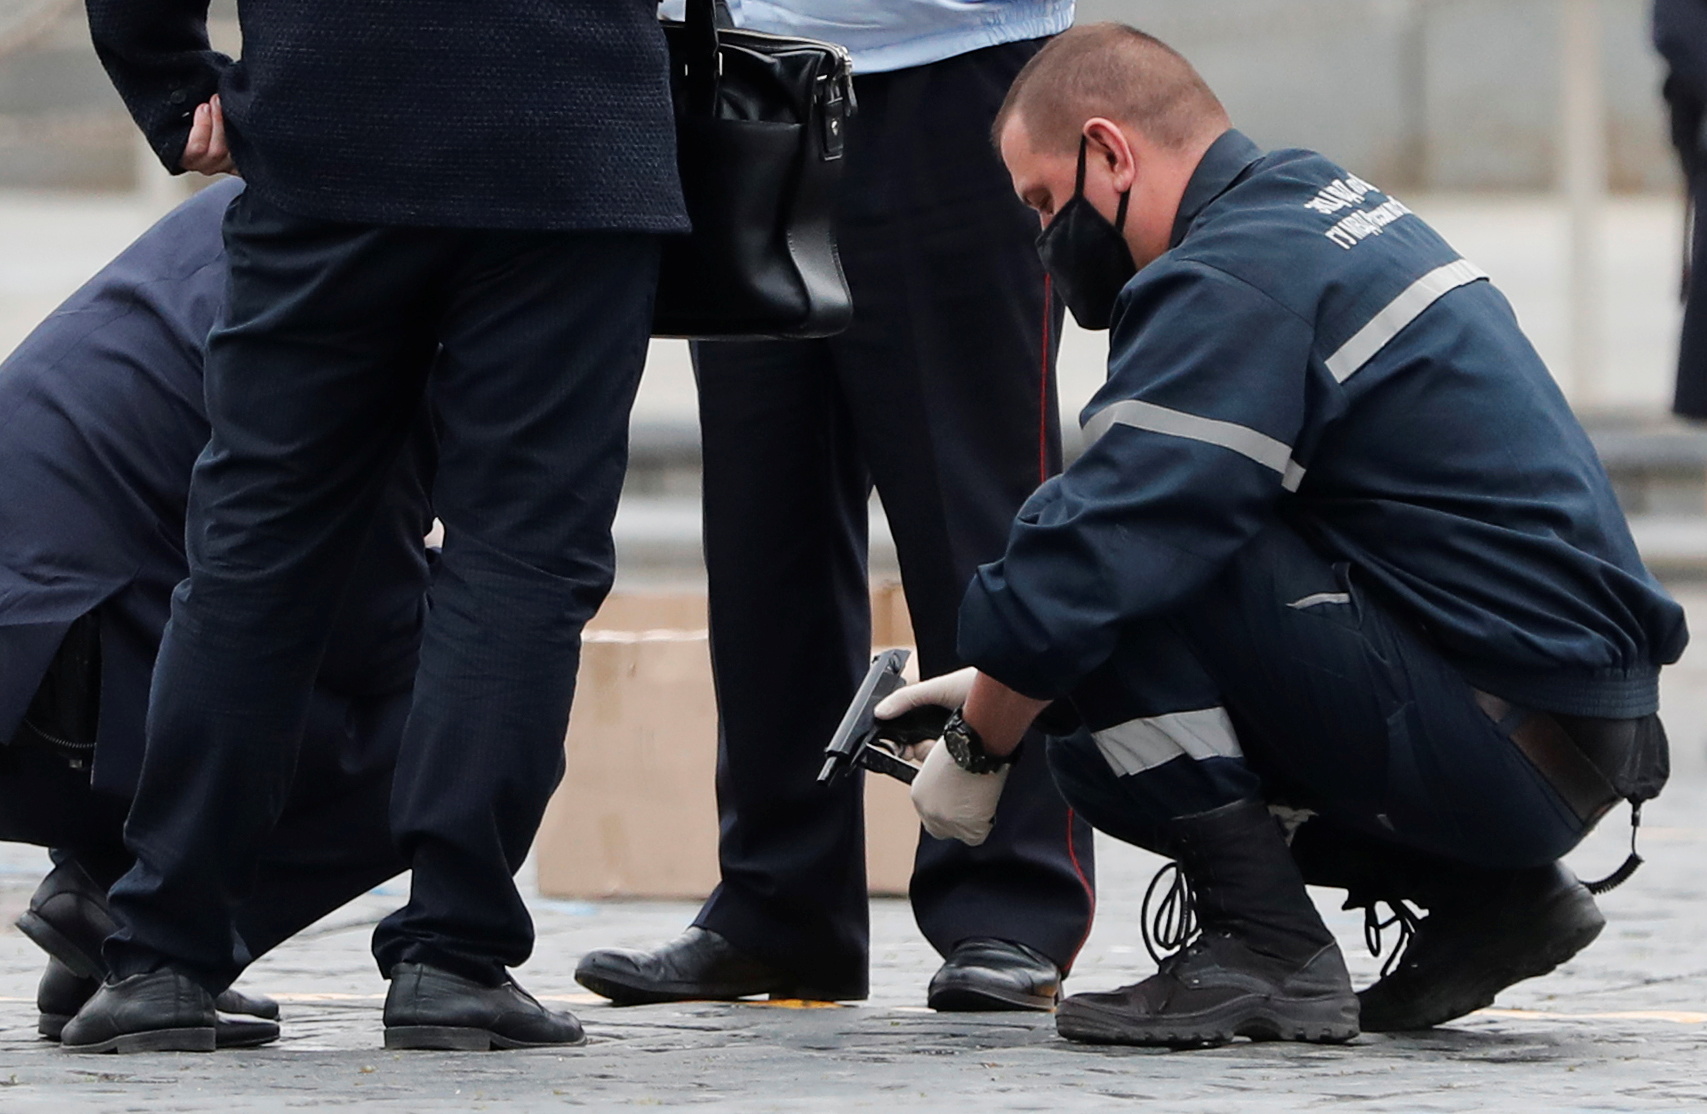 Сотрудники полиции изучают пистолет, предположительно, использовавшийся художником Павлом Крисевичем во время его перформанса на Красной площади. Фото REUTERS/Shamil Zhumatov/Scanpix/Leta